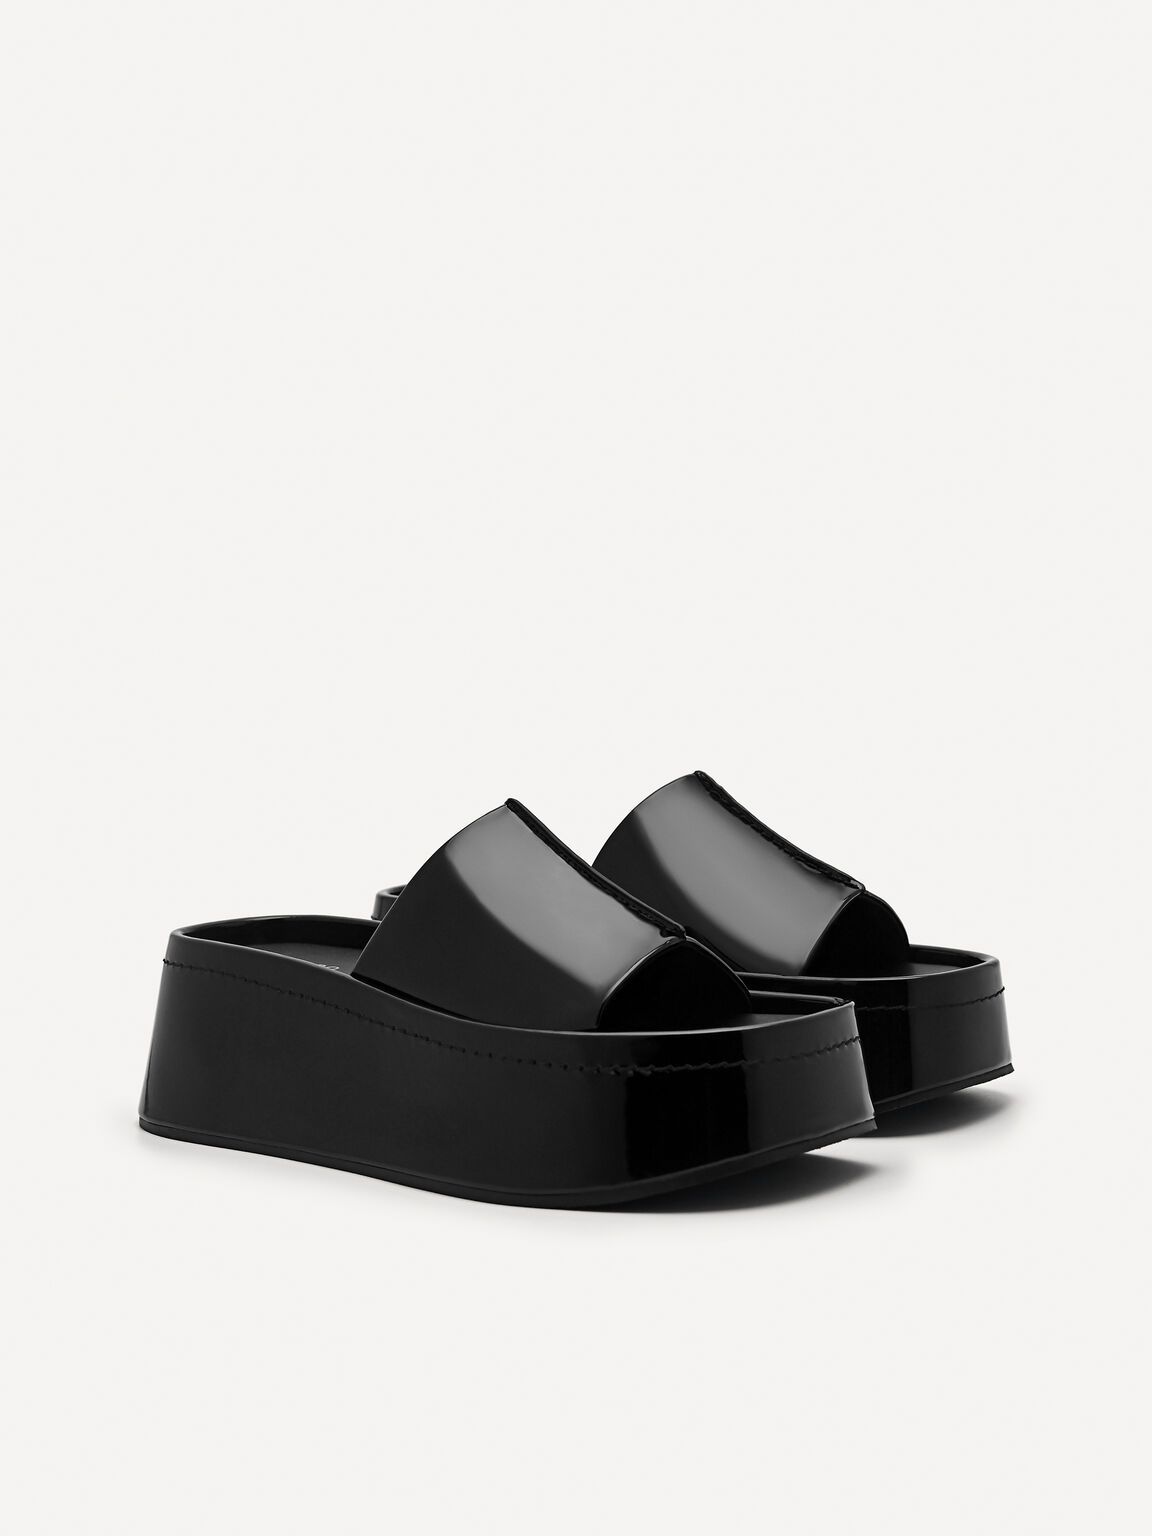 Carmen Platform Sandals, Black